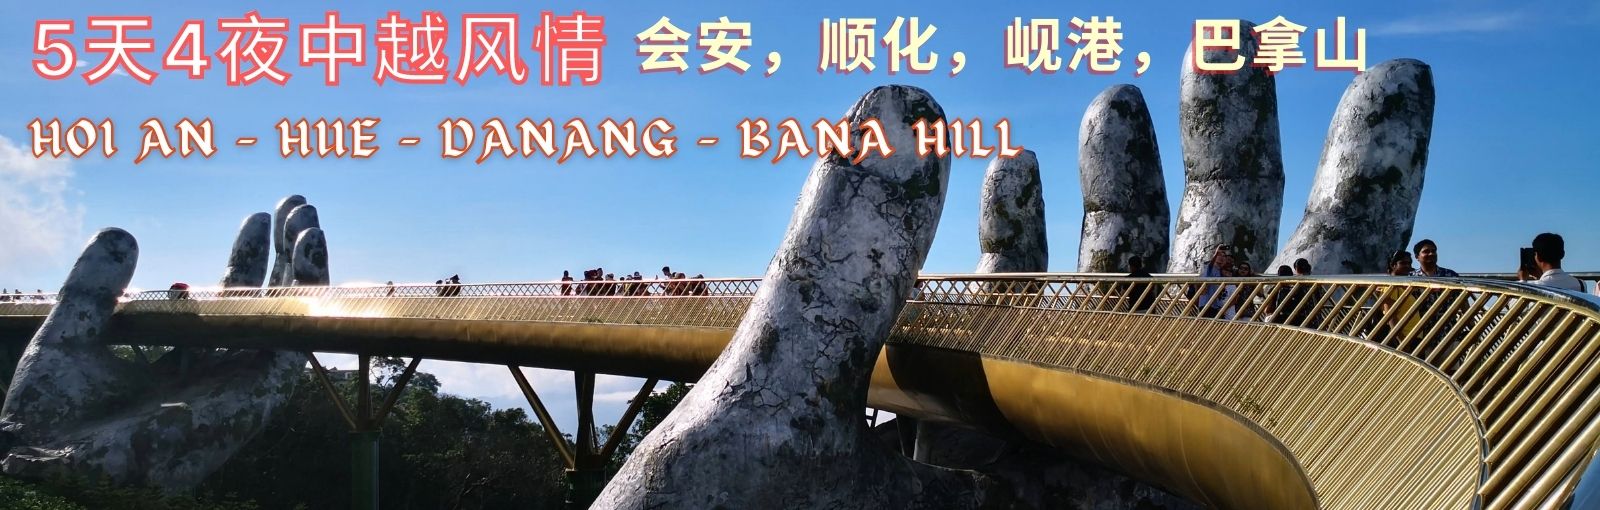 https://www.96travel.com.sg/tour?id=96&n=5d-vietnam-bana-hill-~-hoi-an-~-hue-~-danang-tour